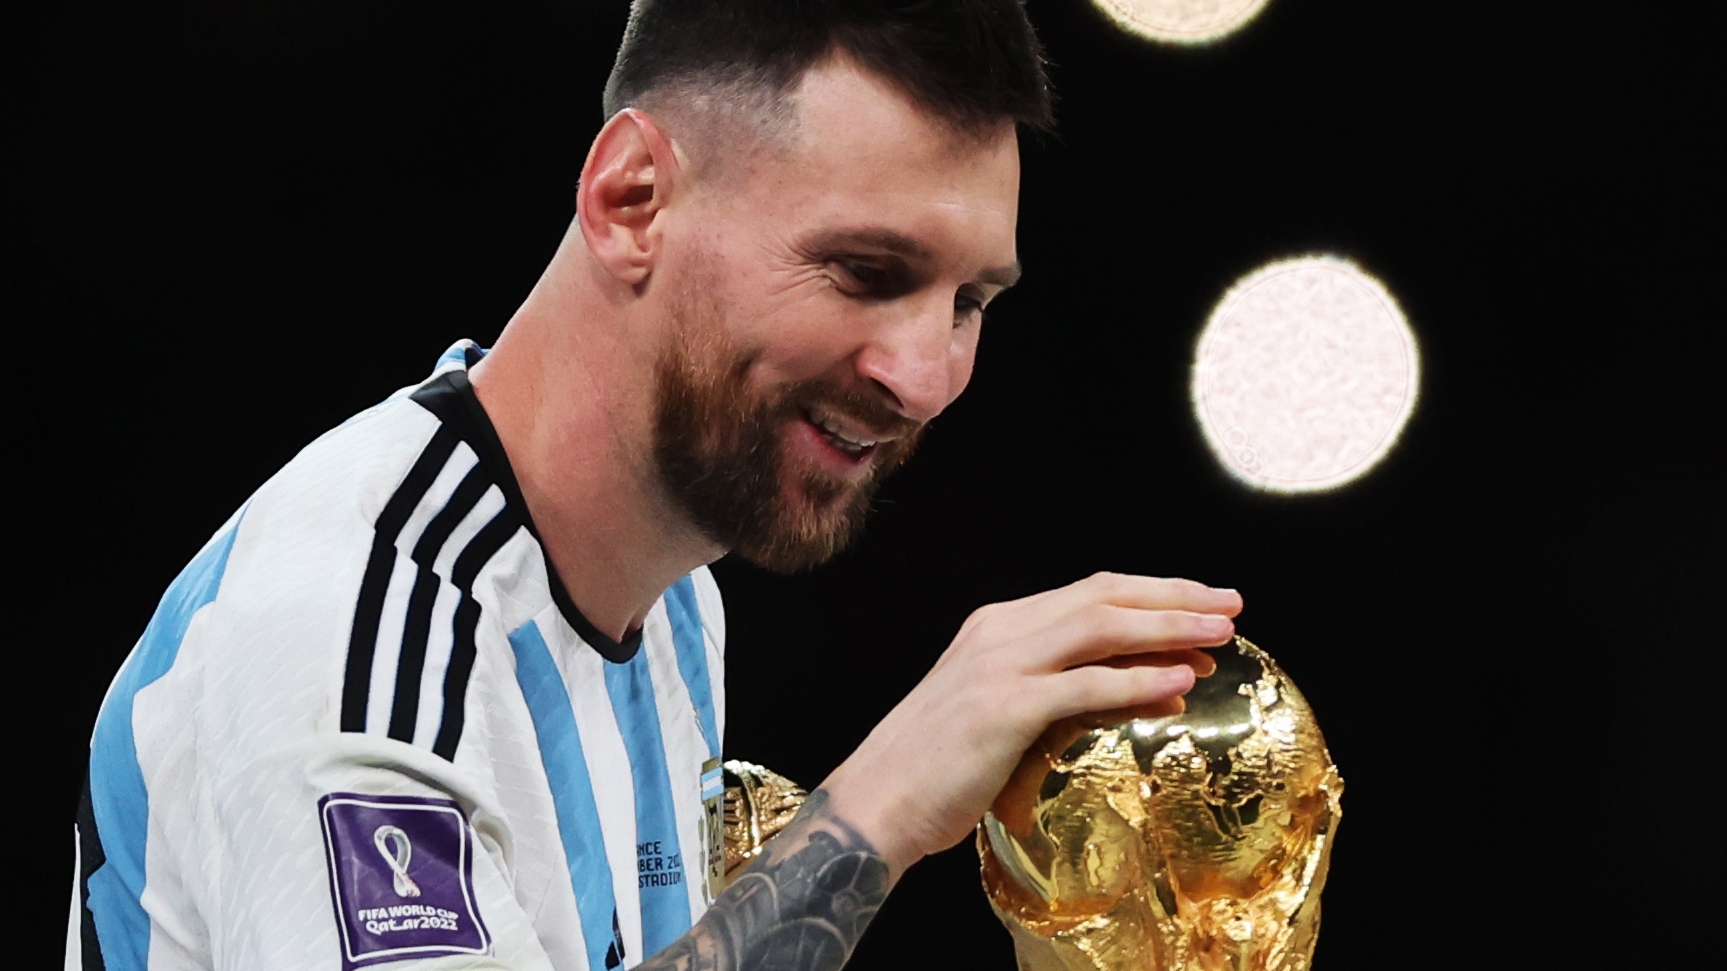 Dónde estuvo la Copa del Mundo desde que Messi la besó hasta hoy? - ESPN